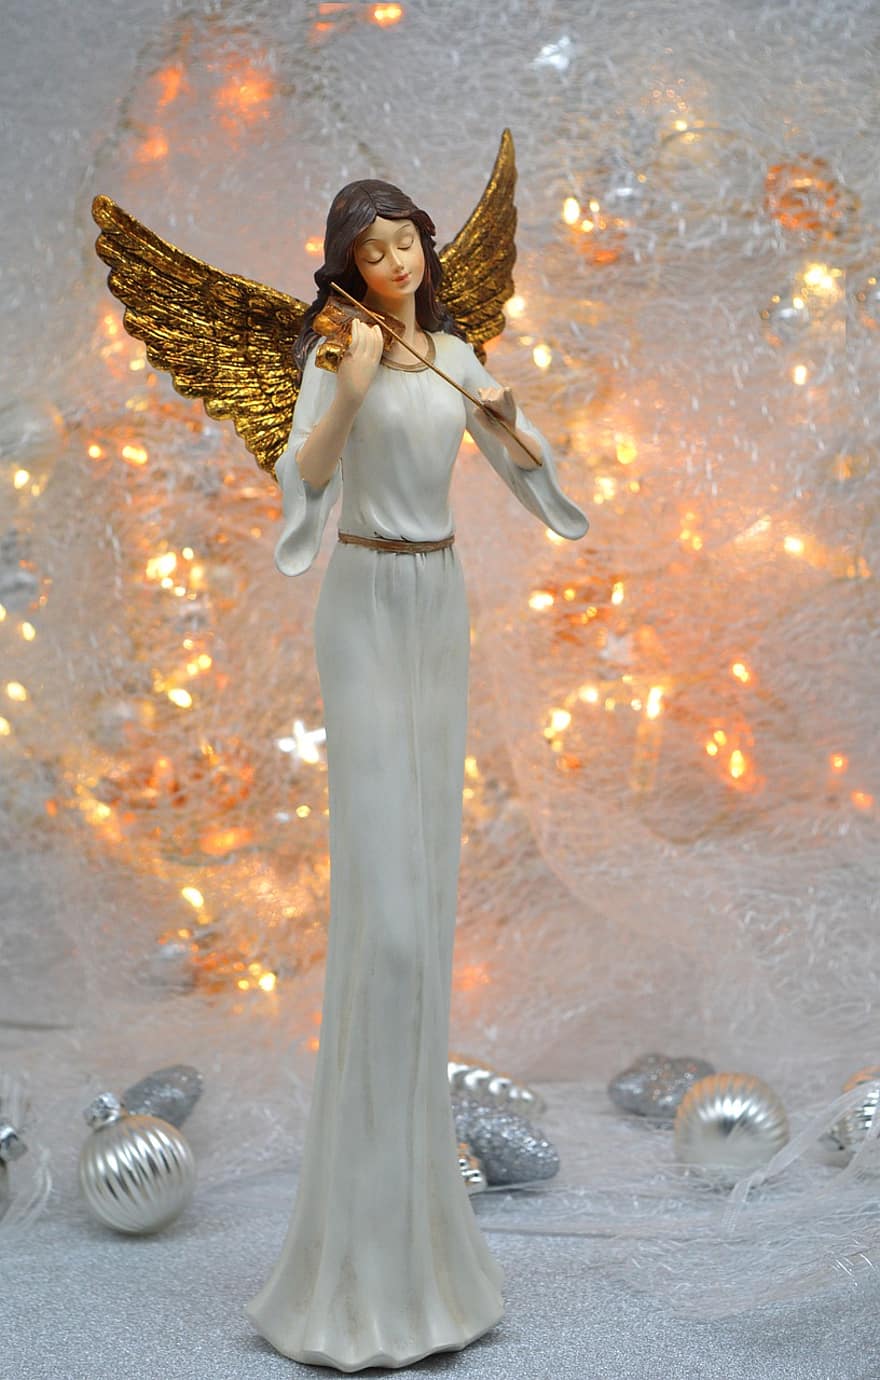 коледен ангел, Коледа, светлини, Коледна украса, цигулка, златни крила, ангел, коледен мотив